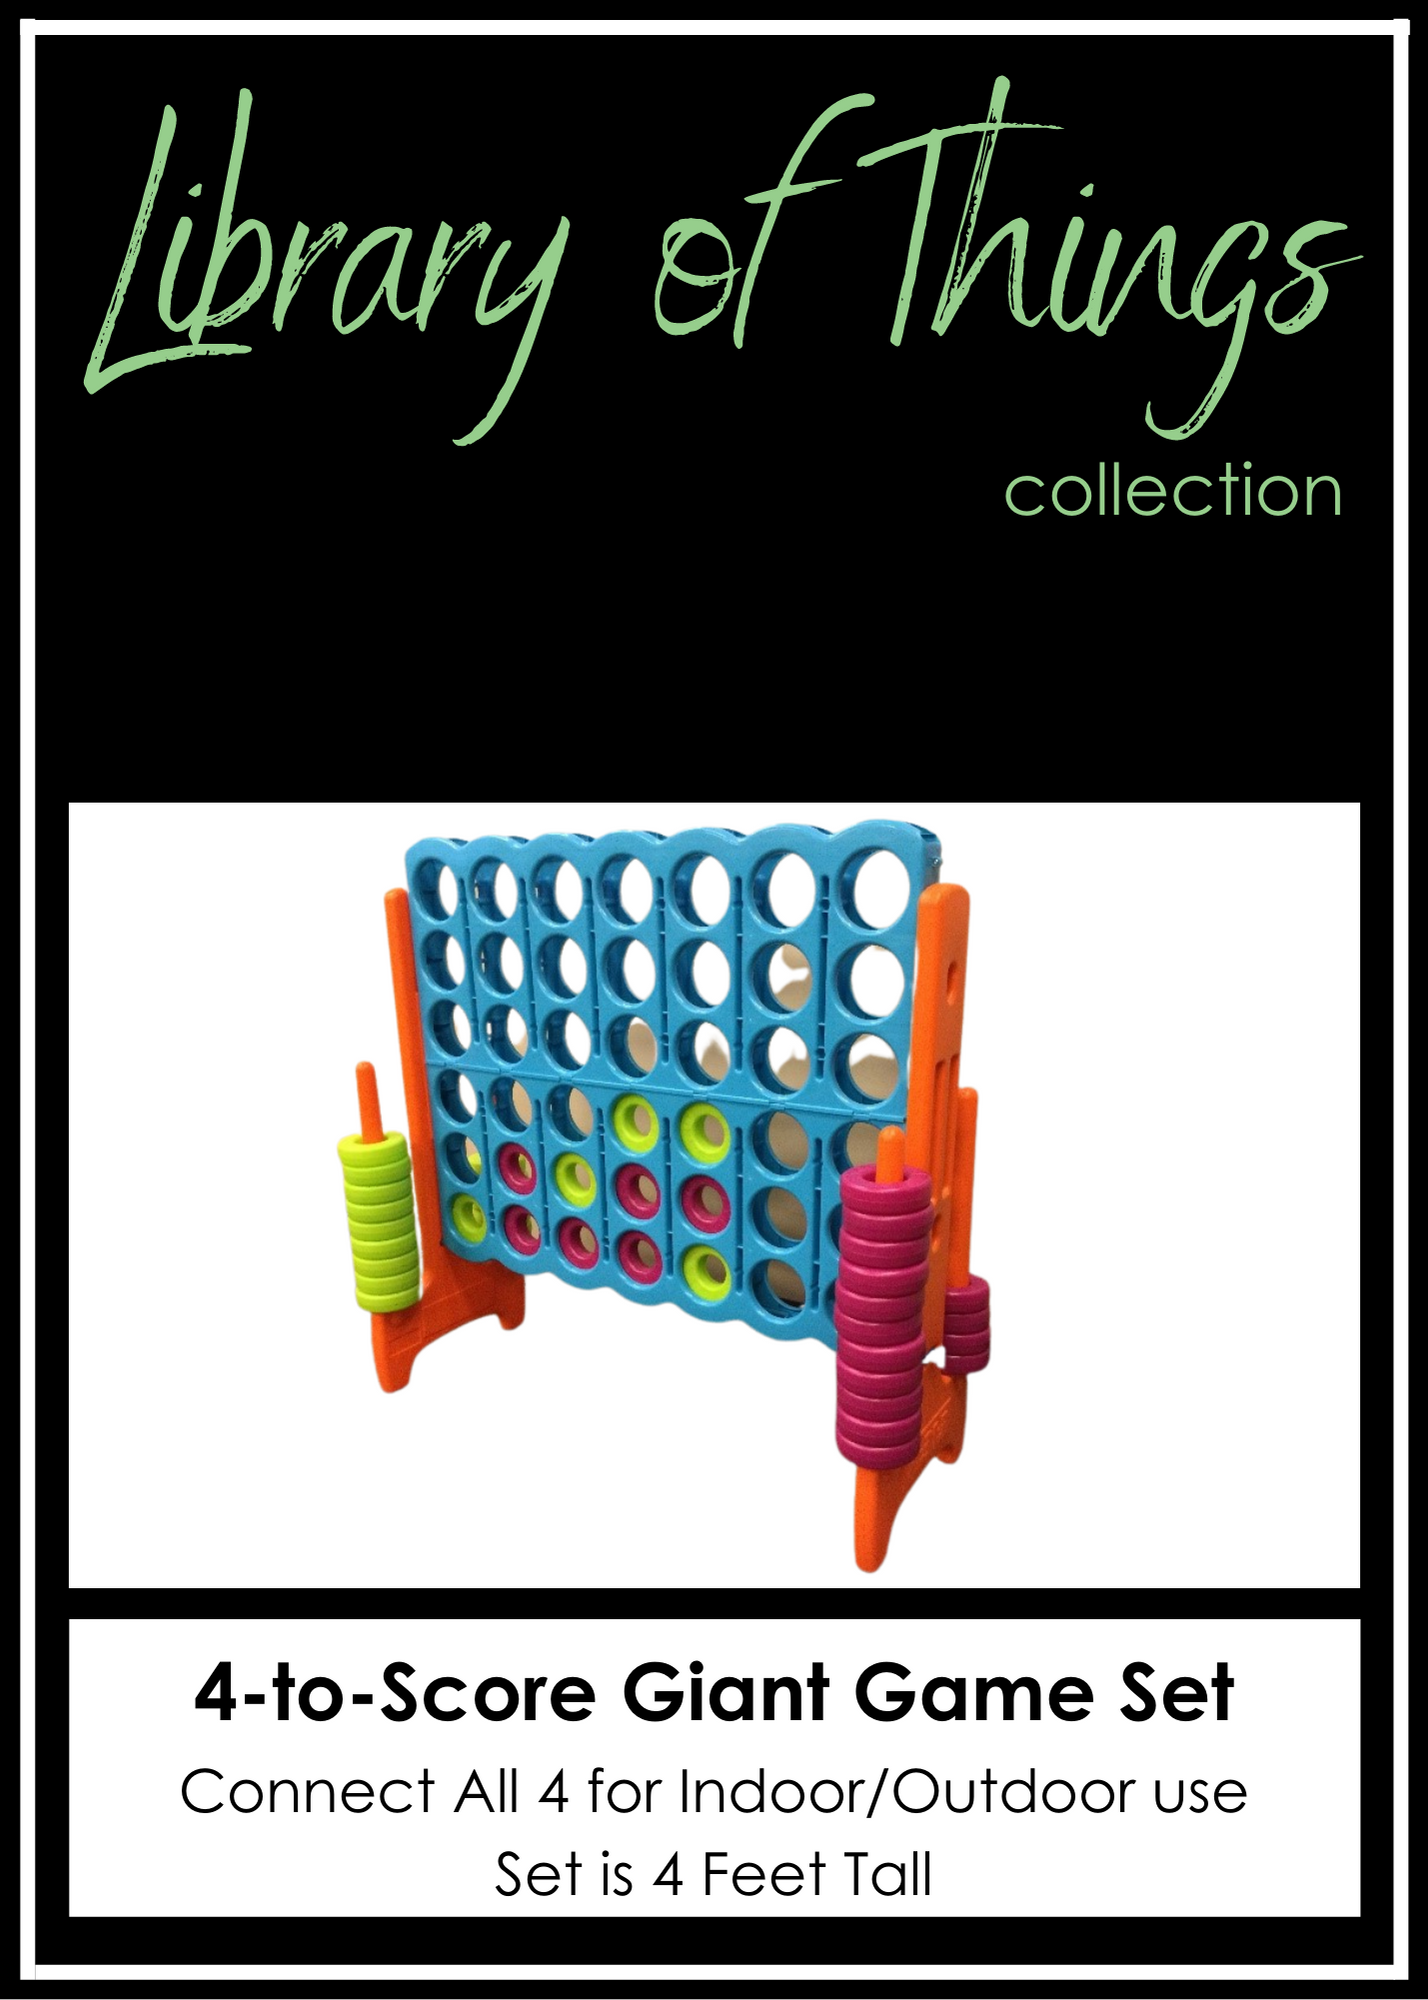 4-to-Score Giant Game Set